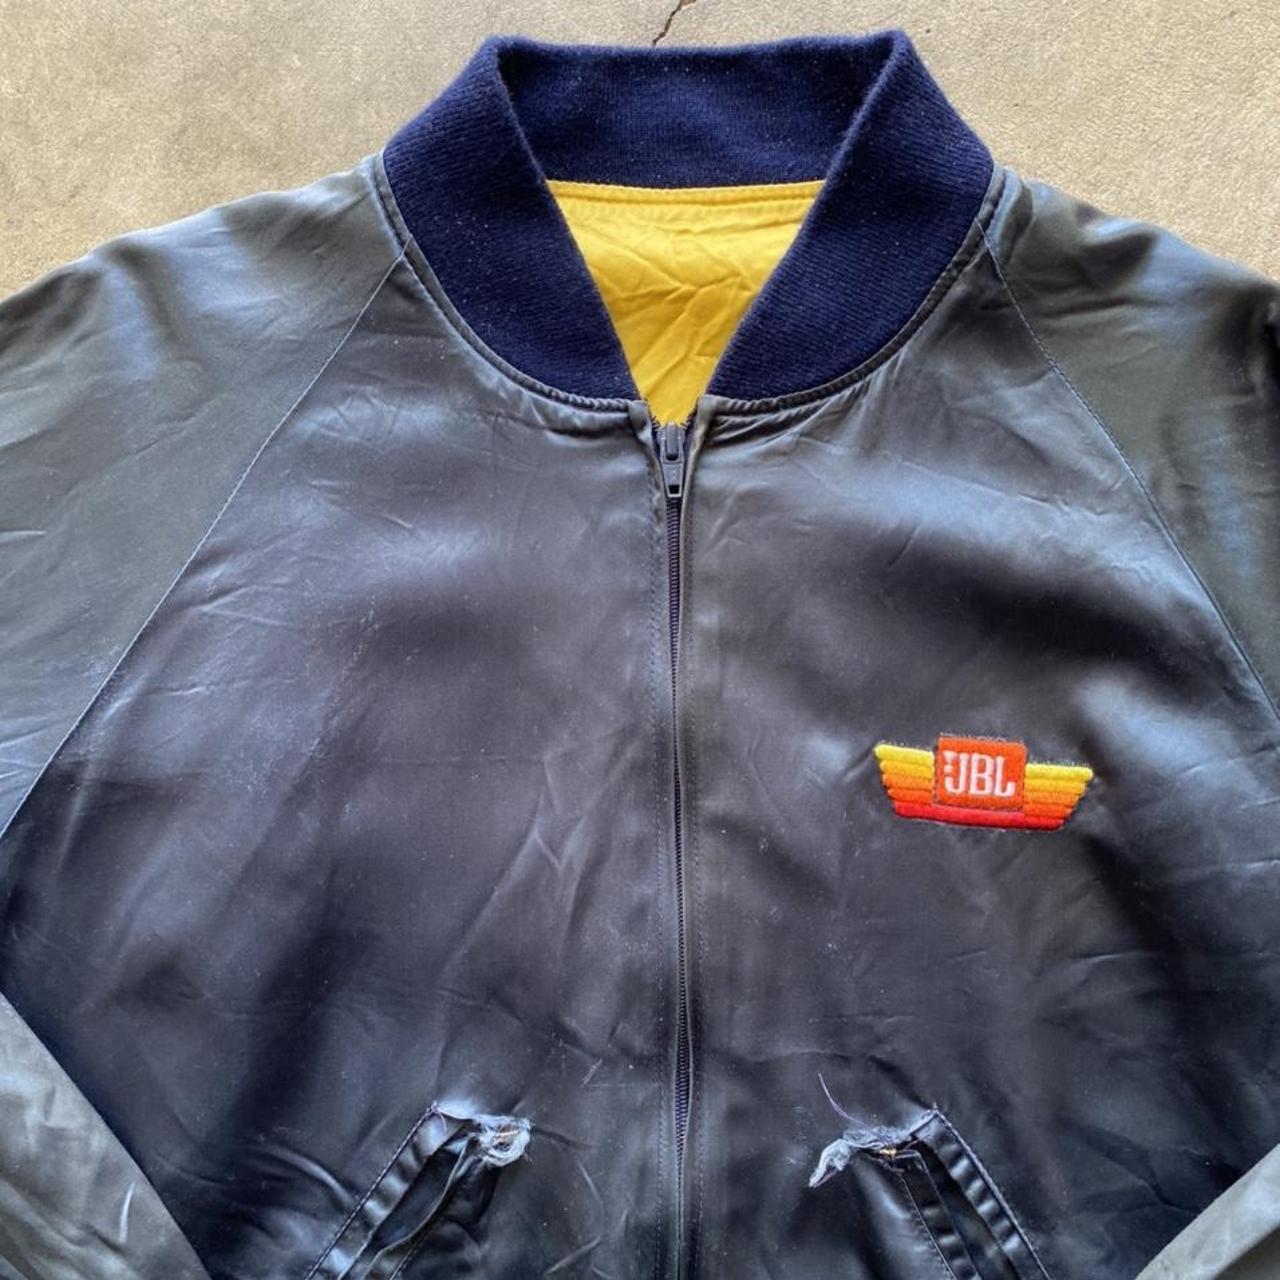 Vintage JBL ‘Get Into Music’ Bomber jacket. Size... - Depop